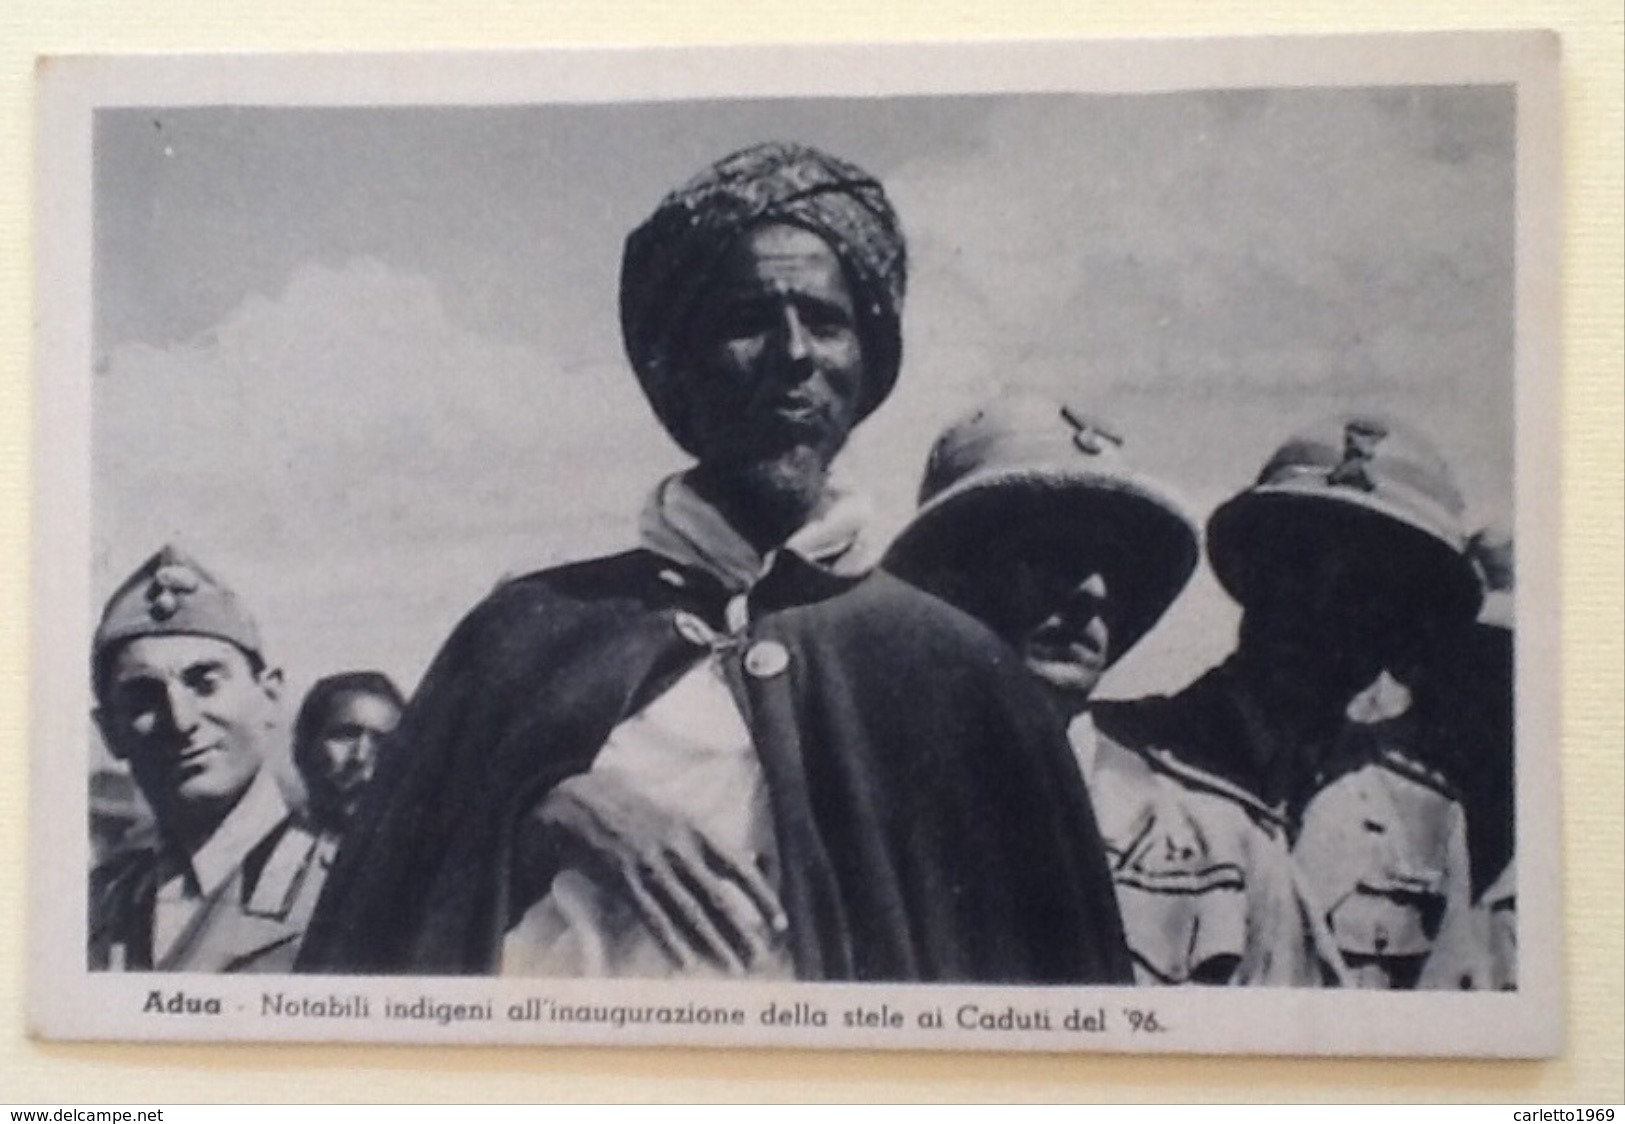 GUERRA D'ETIOPIA ADUA INDIGENI INAUGURAZIONE STELE CADUTI DEL 1896 --N.2 - Other Wars